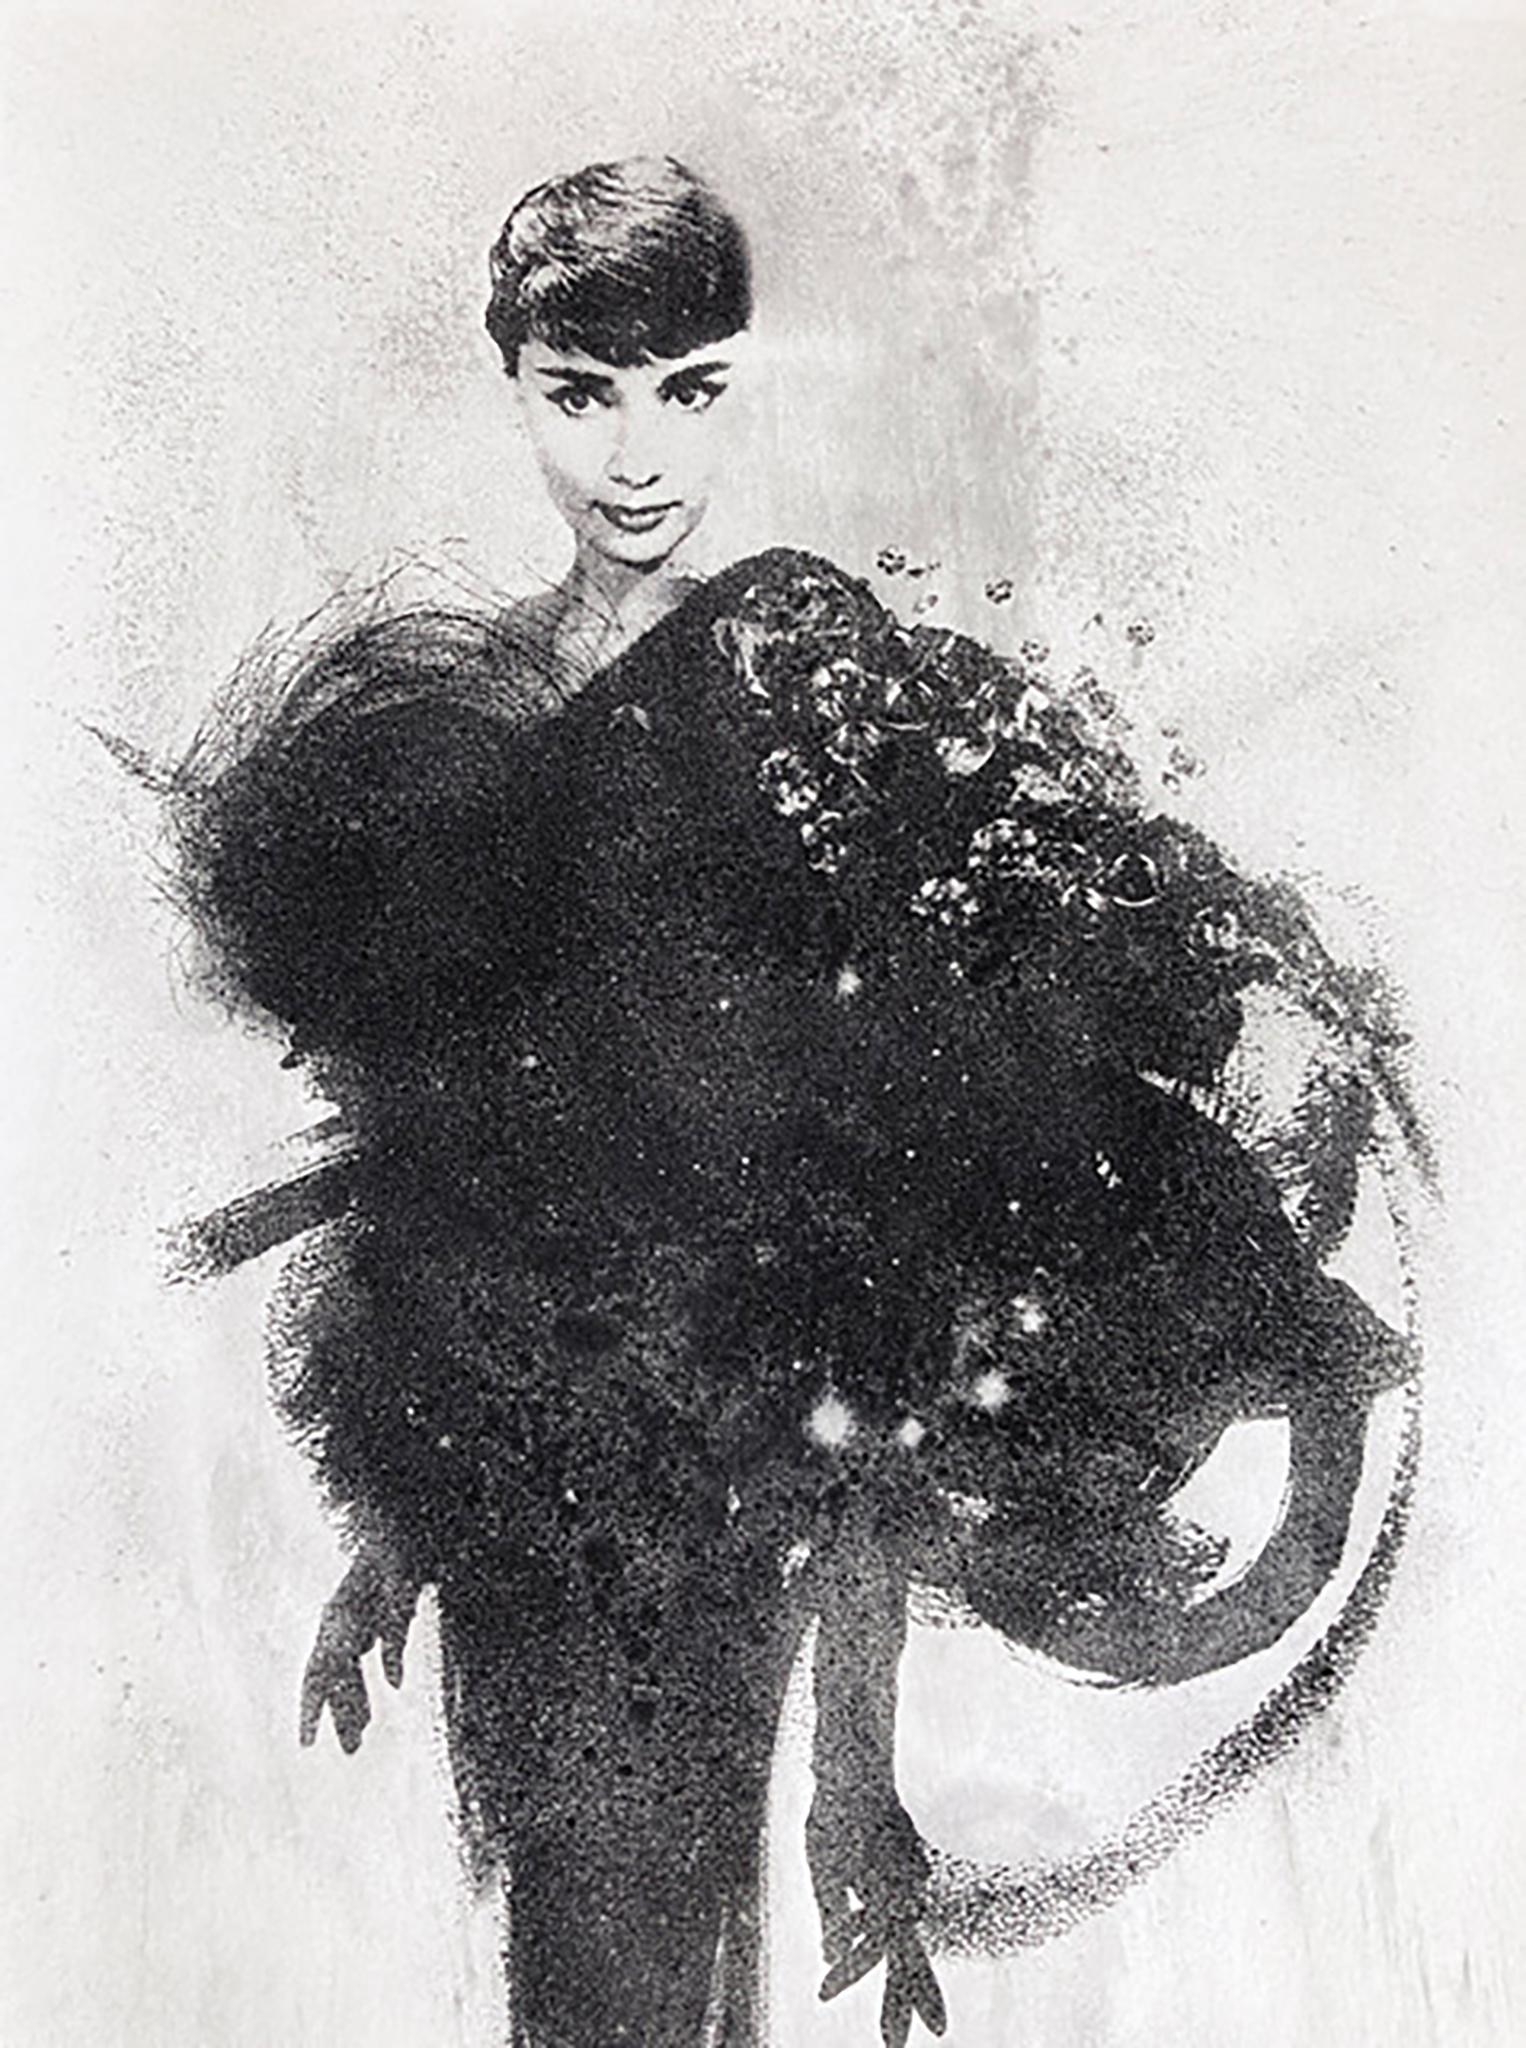 Mischtechnik-Siebdruck in limitierter Auflage, von der Mode inspiriert, Audrey Hepburn – Print von Rosie Emerson